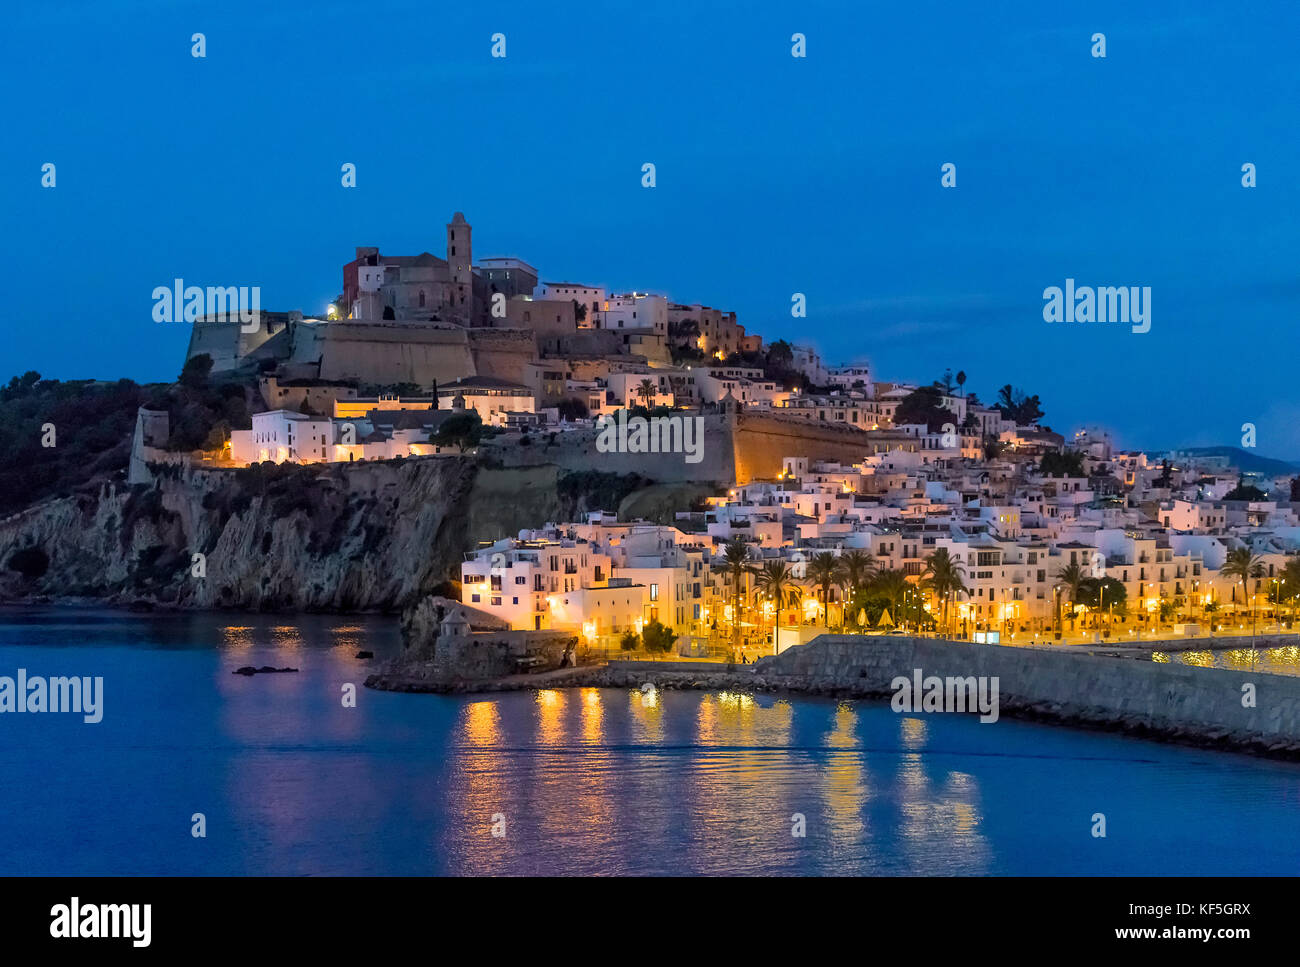 La ciudad de Ibiza y la catedral de Santa Maria d'Eivissa por la noche, Ibiza, Islas Baleares, España. Foto de stock